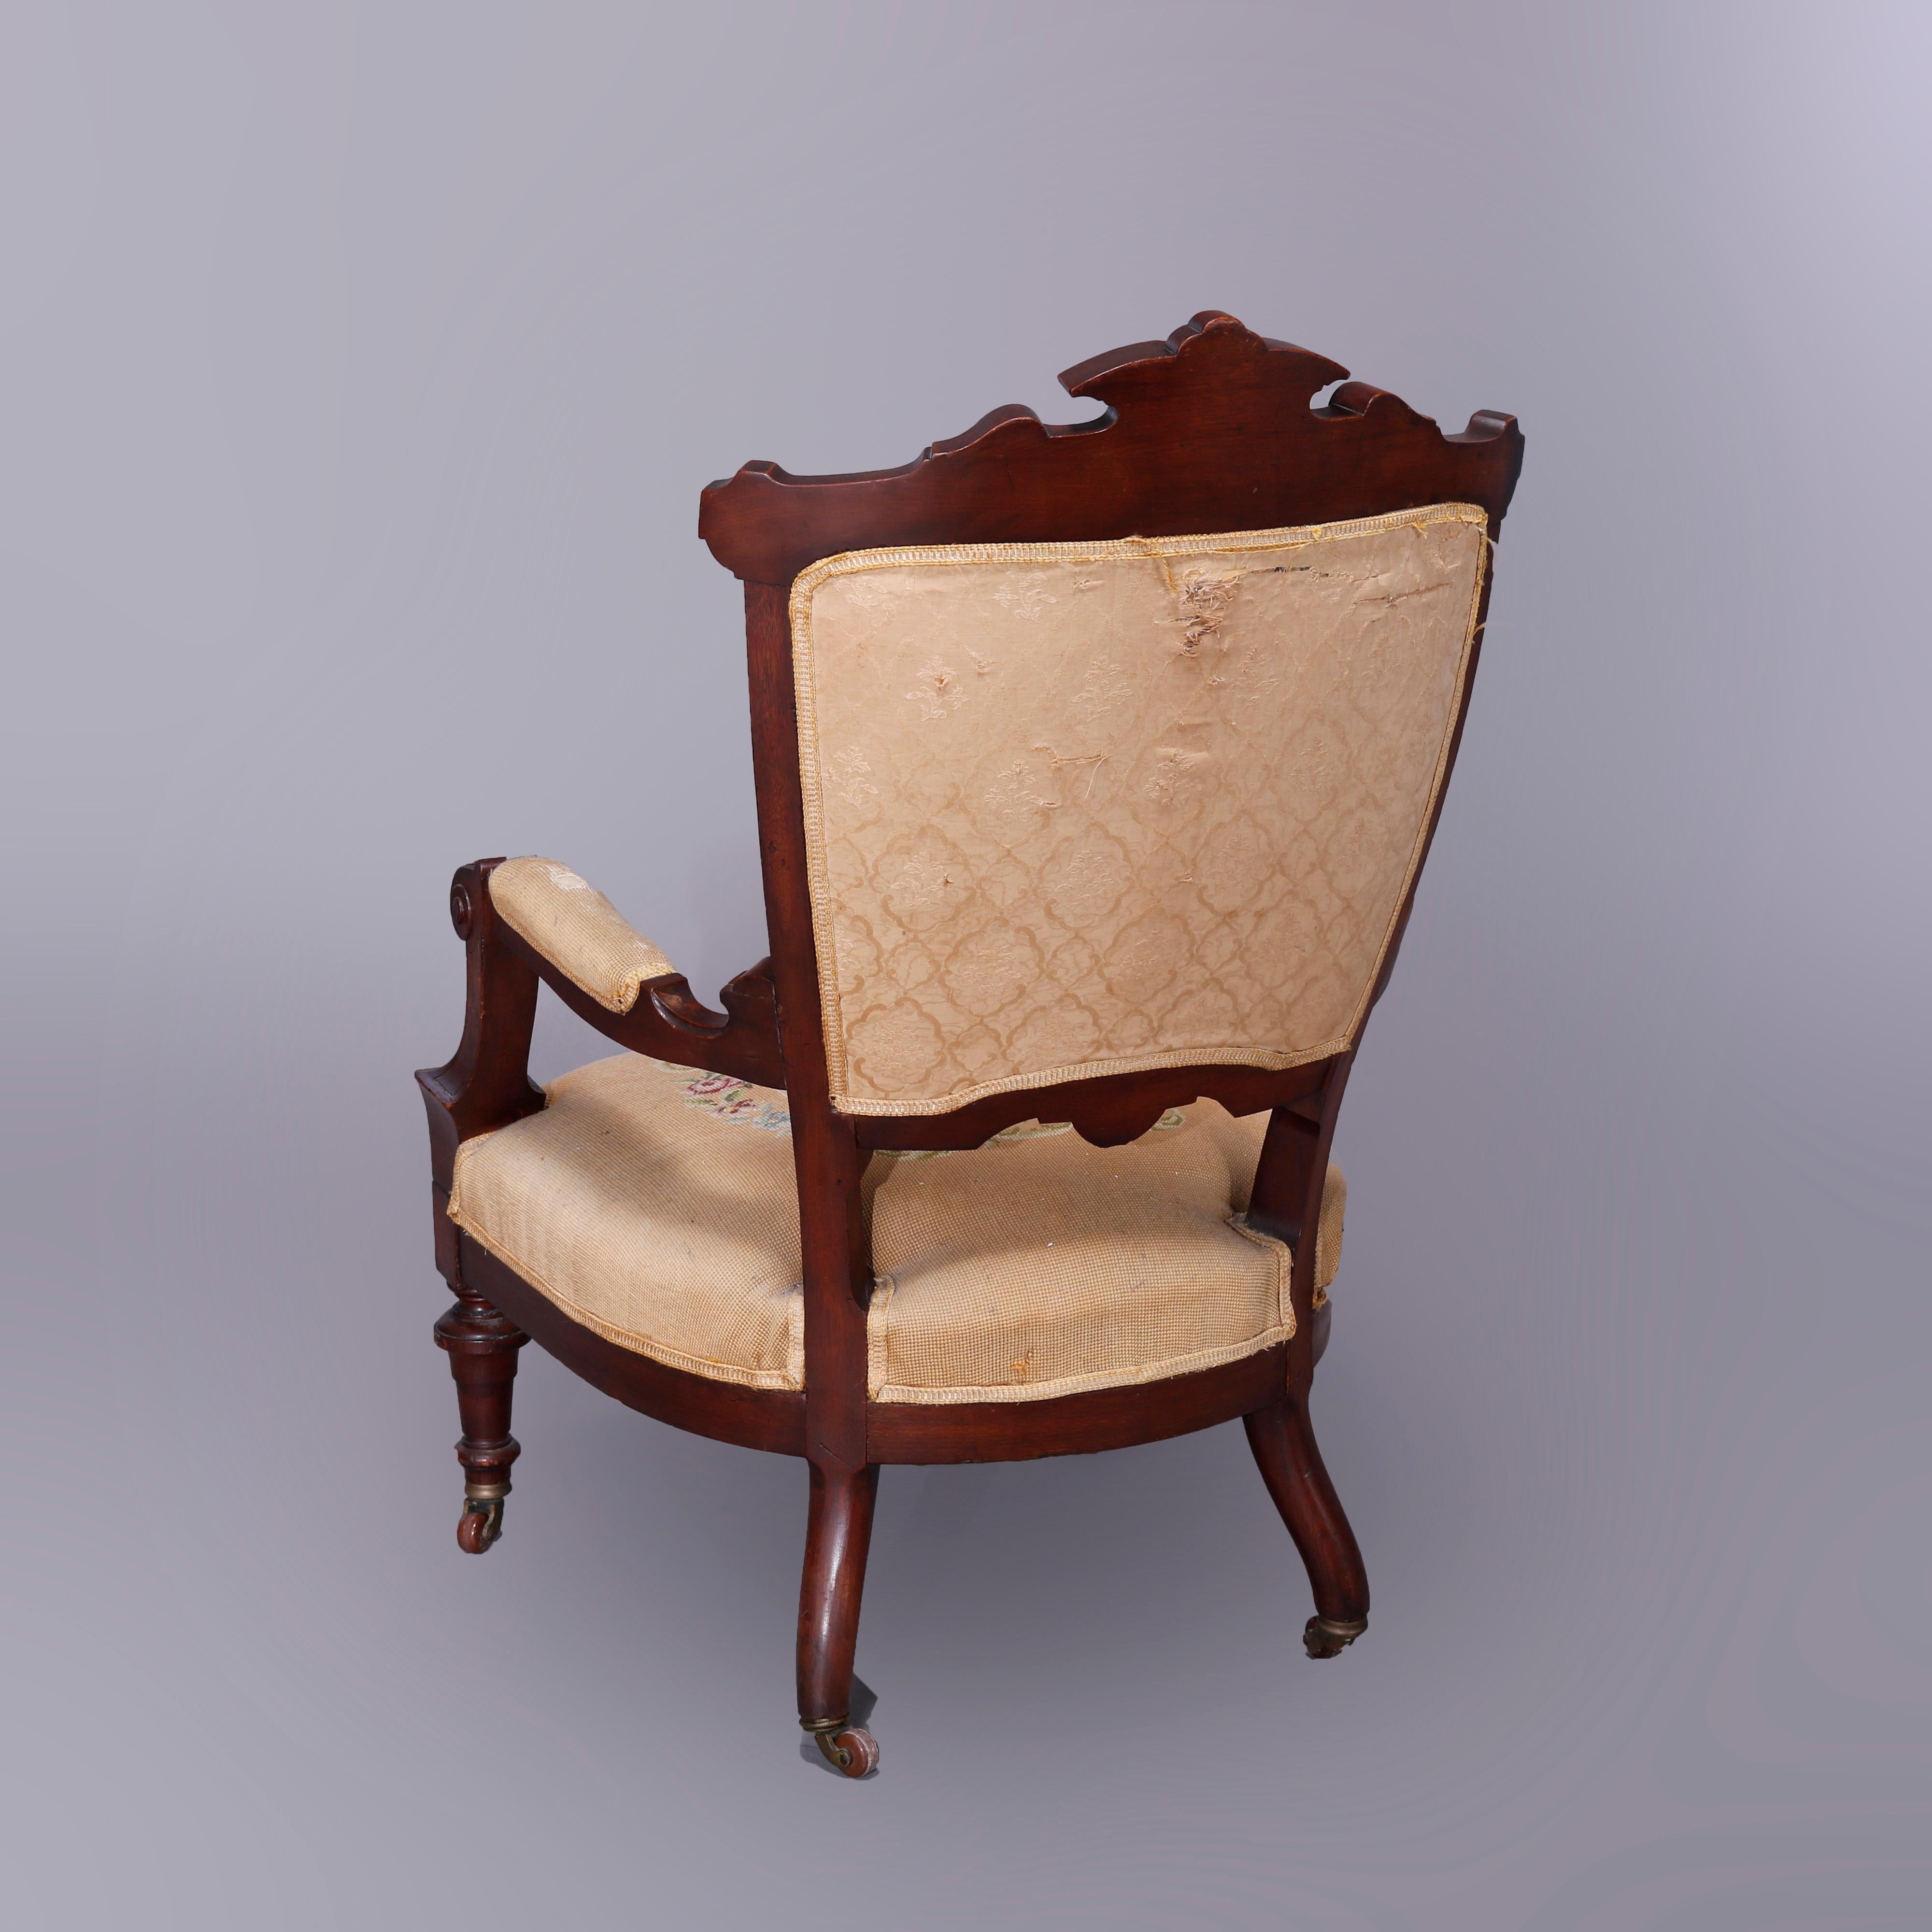 Antique Renaissance Revival Walnut, Burl & Needlepoint Parlor Chairs, c1890 For Sale 2